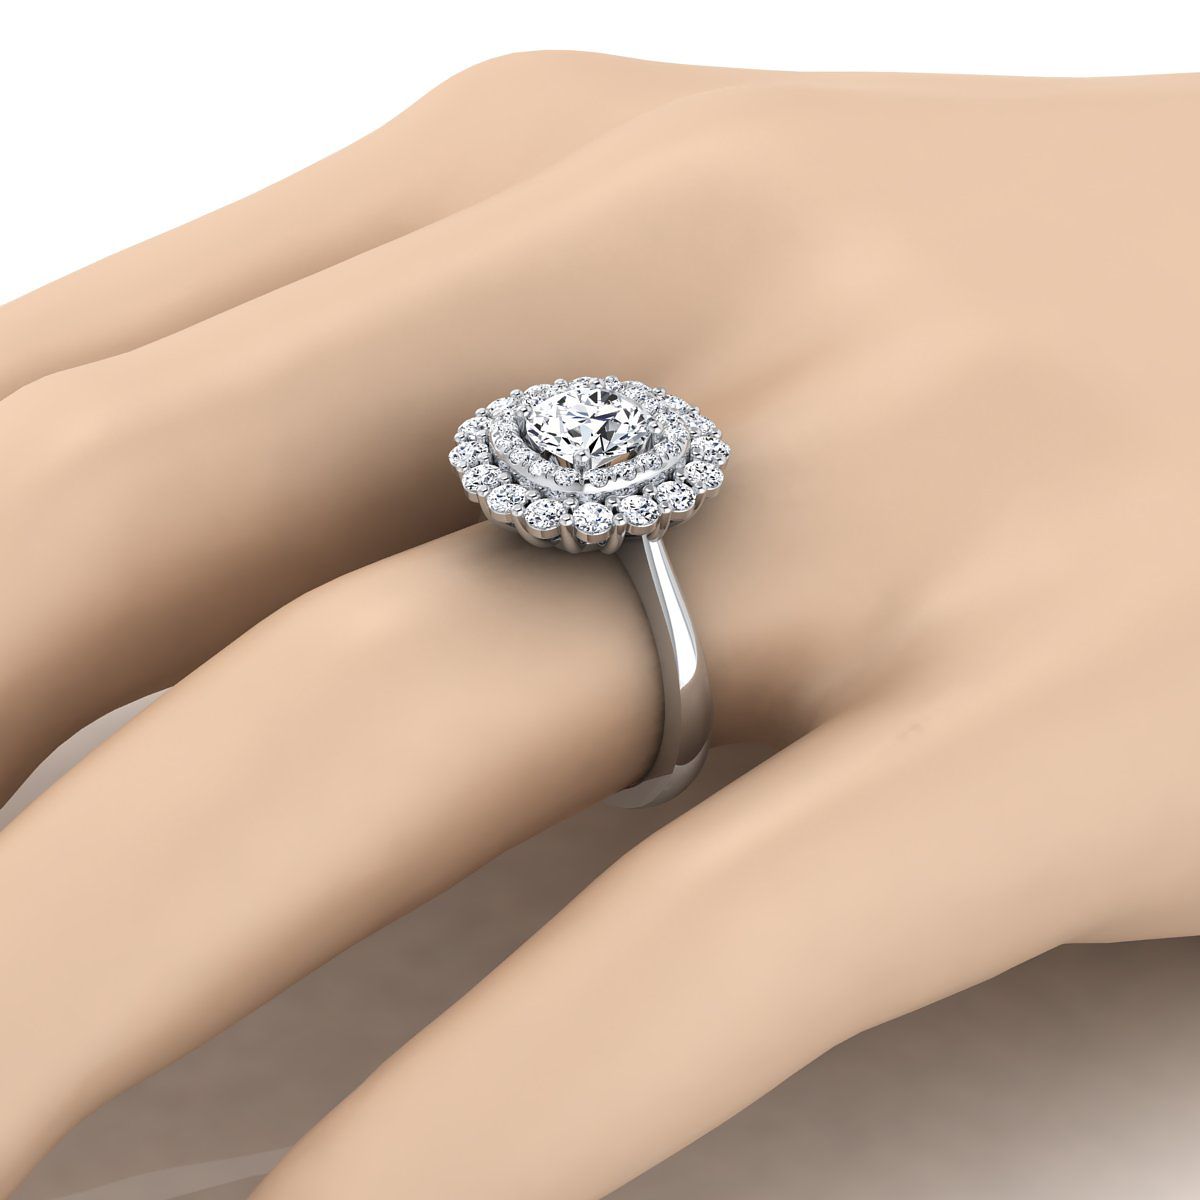 แหวนหมั้นทองคำขาว 14K ทรงกลมประดับเพชร Double Halo Floral Sunburst -1ctw